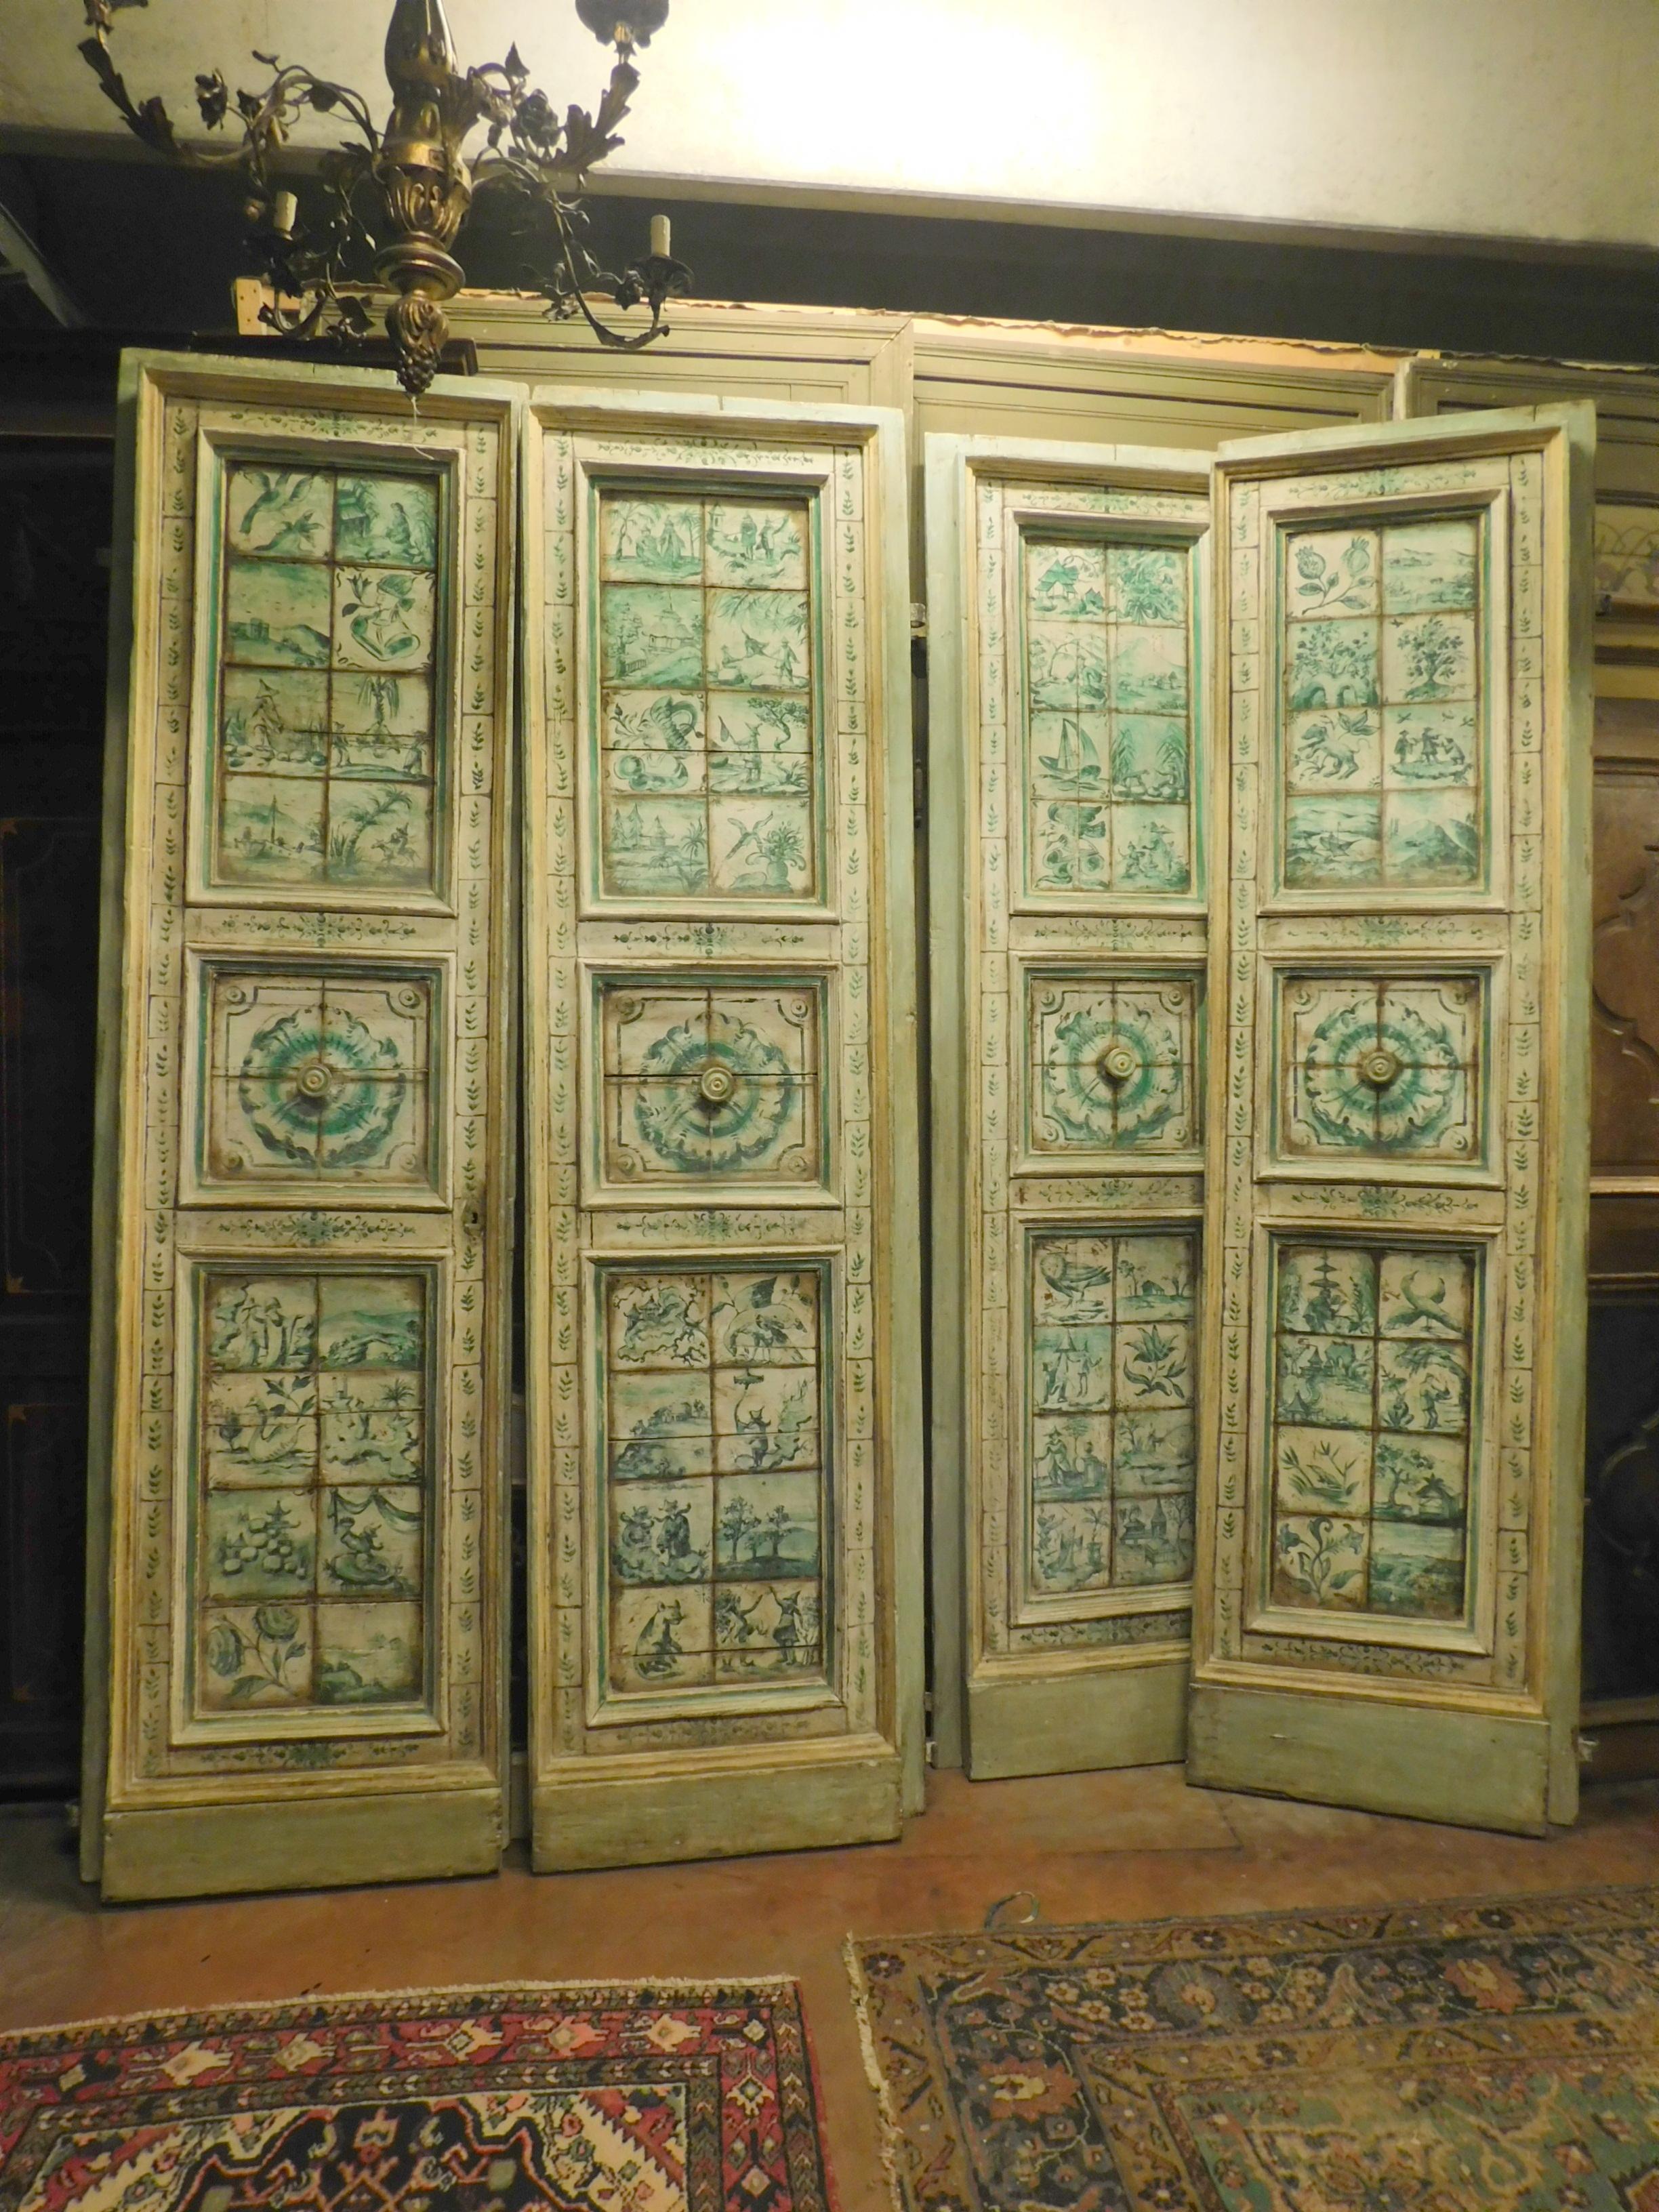 5 portes à deux battants, paires de portes anciennes avec des carreaux de majolique peints à la main, couleur verte sur fond blanc crème, provenant d'une prestigieuse villa en Toscane, où l'on produisait la majolique.
Réalisées par un artisan